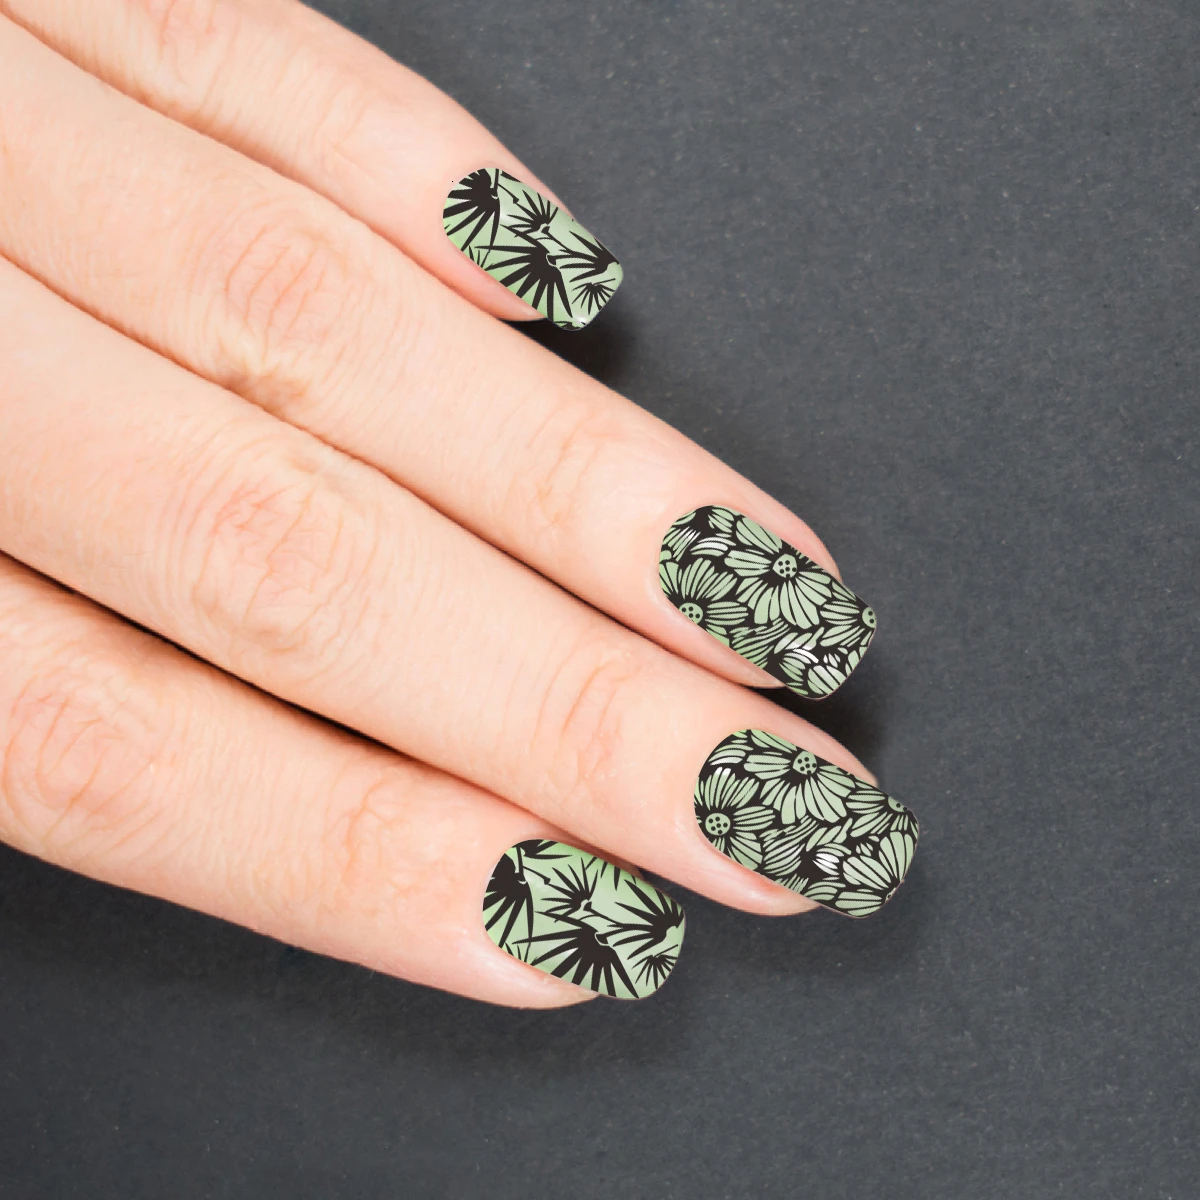 Shomants ногтей штамповки пластины бабочка оставить цветок растения Печать изображения трафарет ногтей шаблон штамповочных плит дизайн ногтей плесень